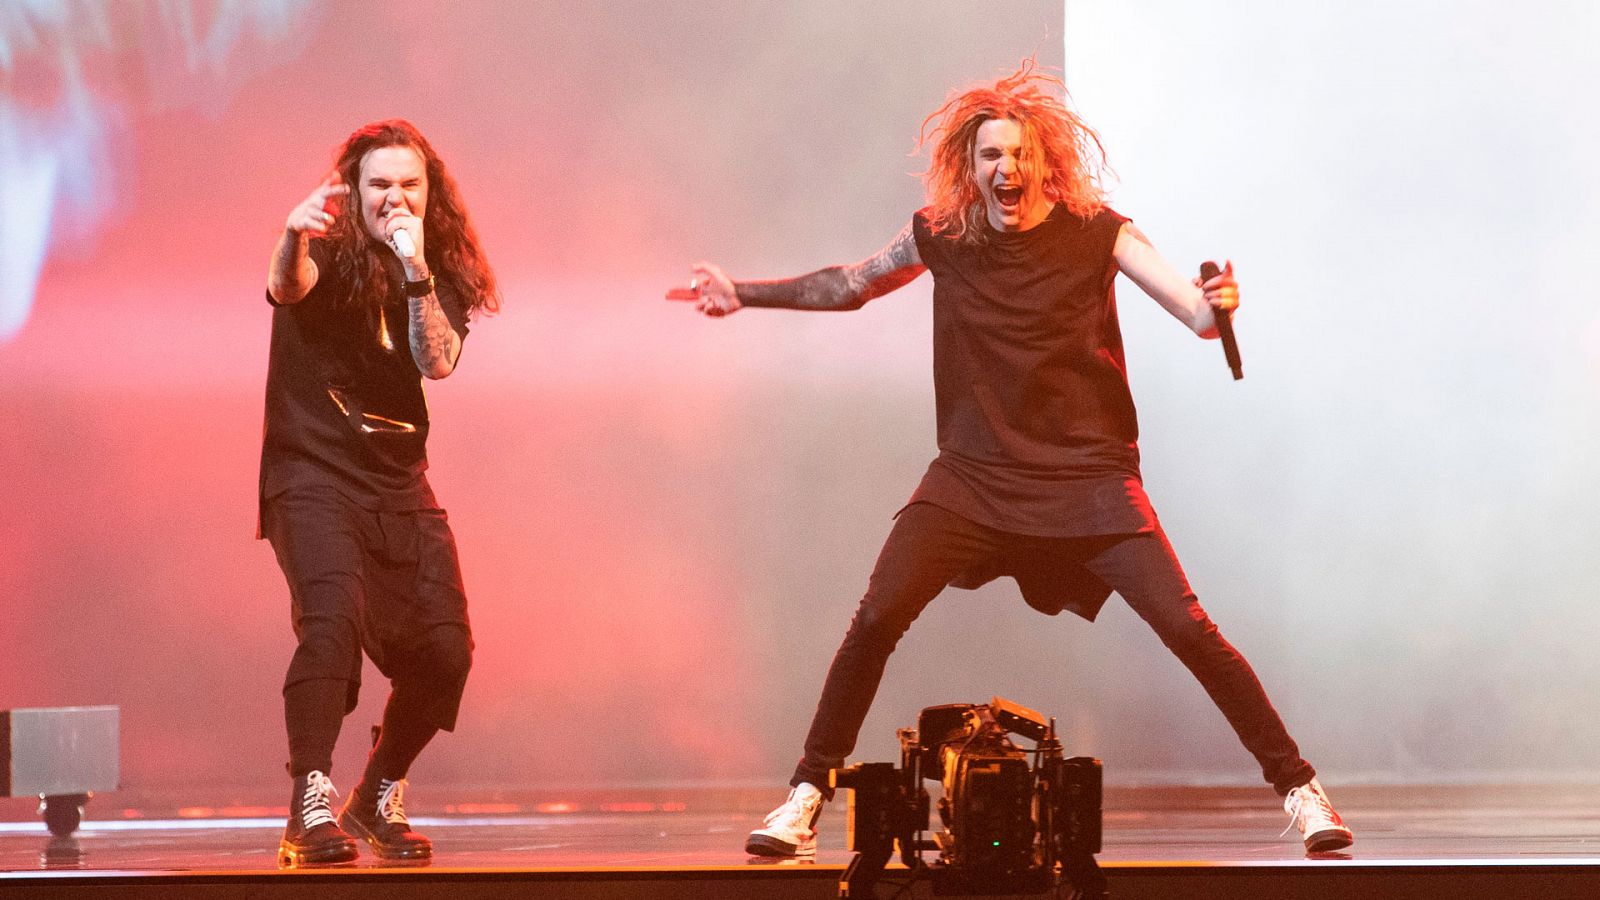 Eurovisión: Finlandia canta "Dark side" en la segunda semifinal